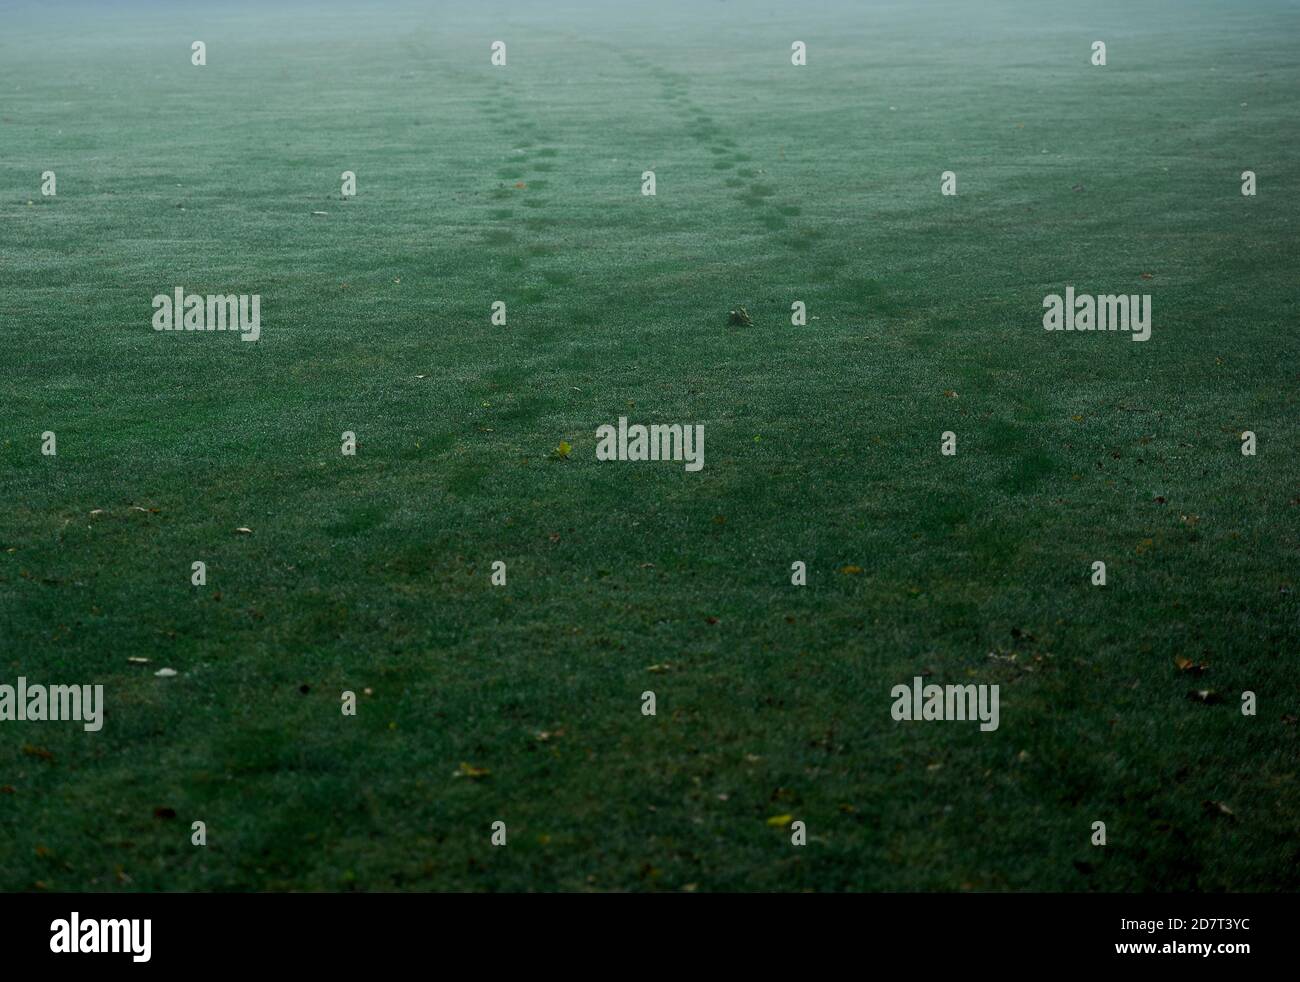 Zwei Sätze Fußabdrücke auf Gras an nassem, nebligen Morgen. Vollformat, Kopierbereich, horizontale Komposition. Stockfoto